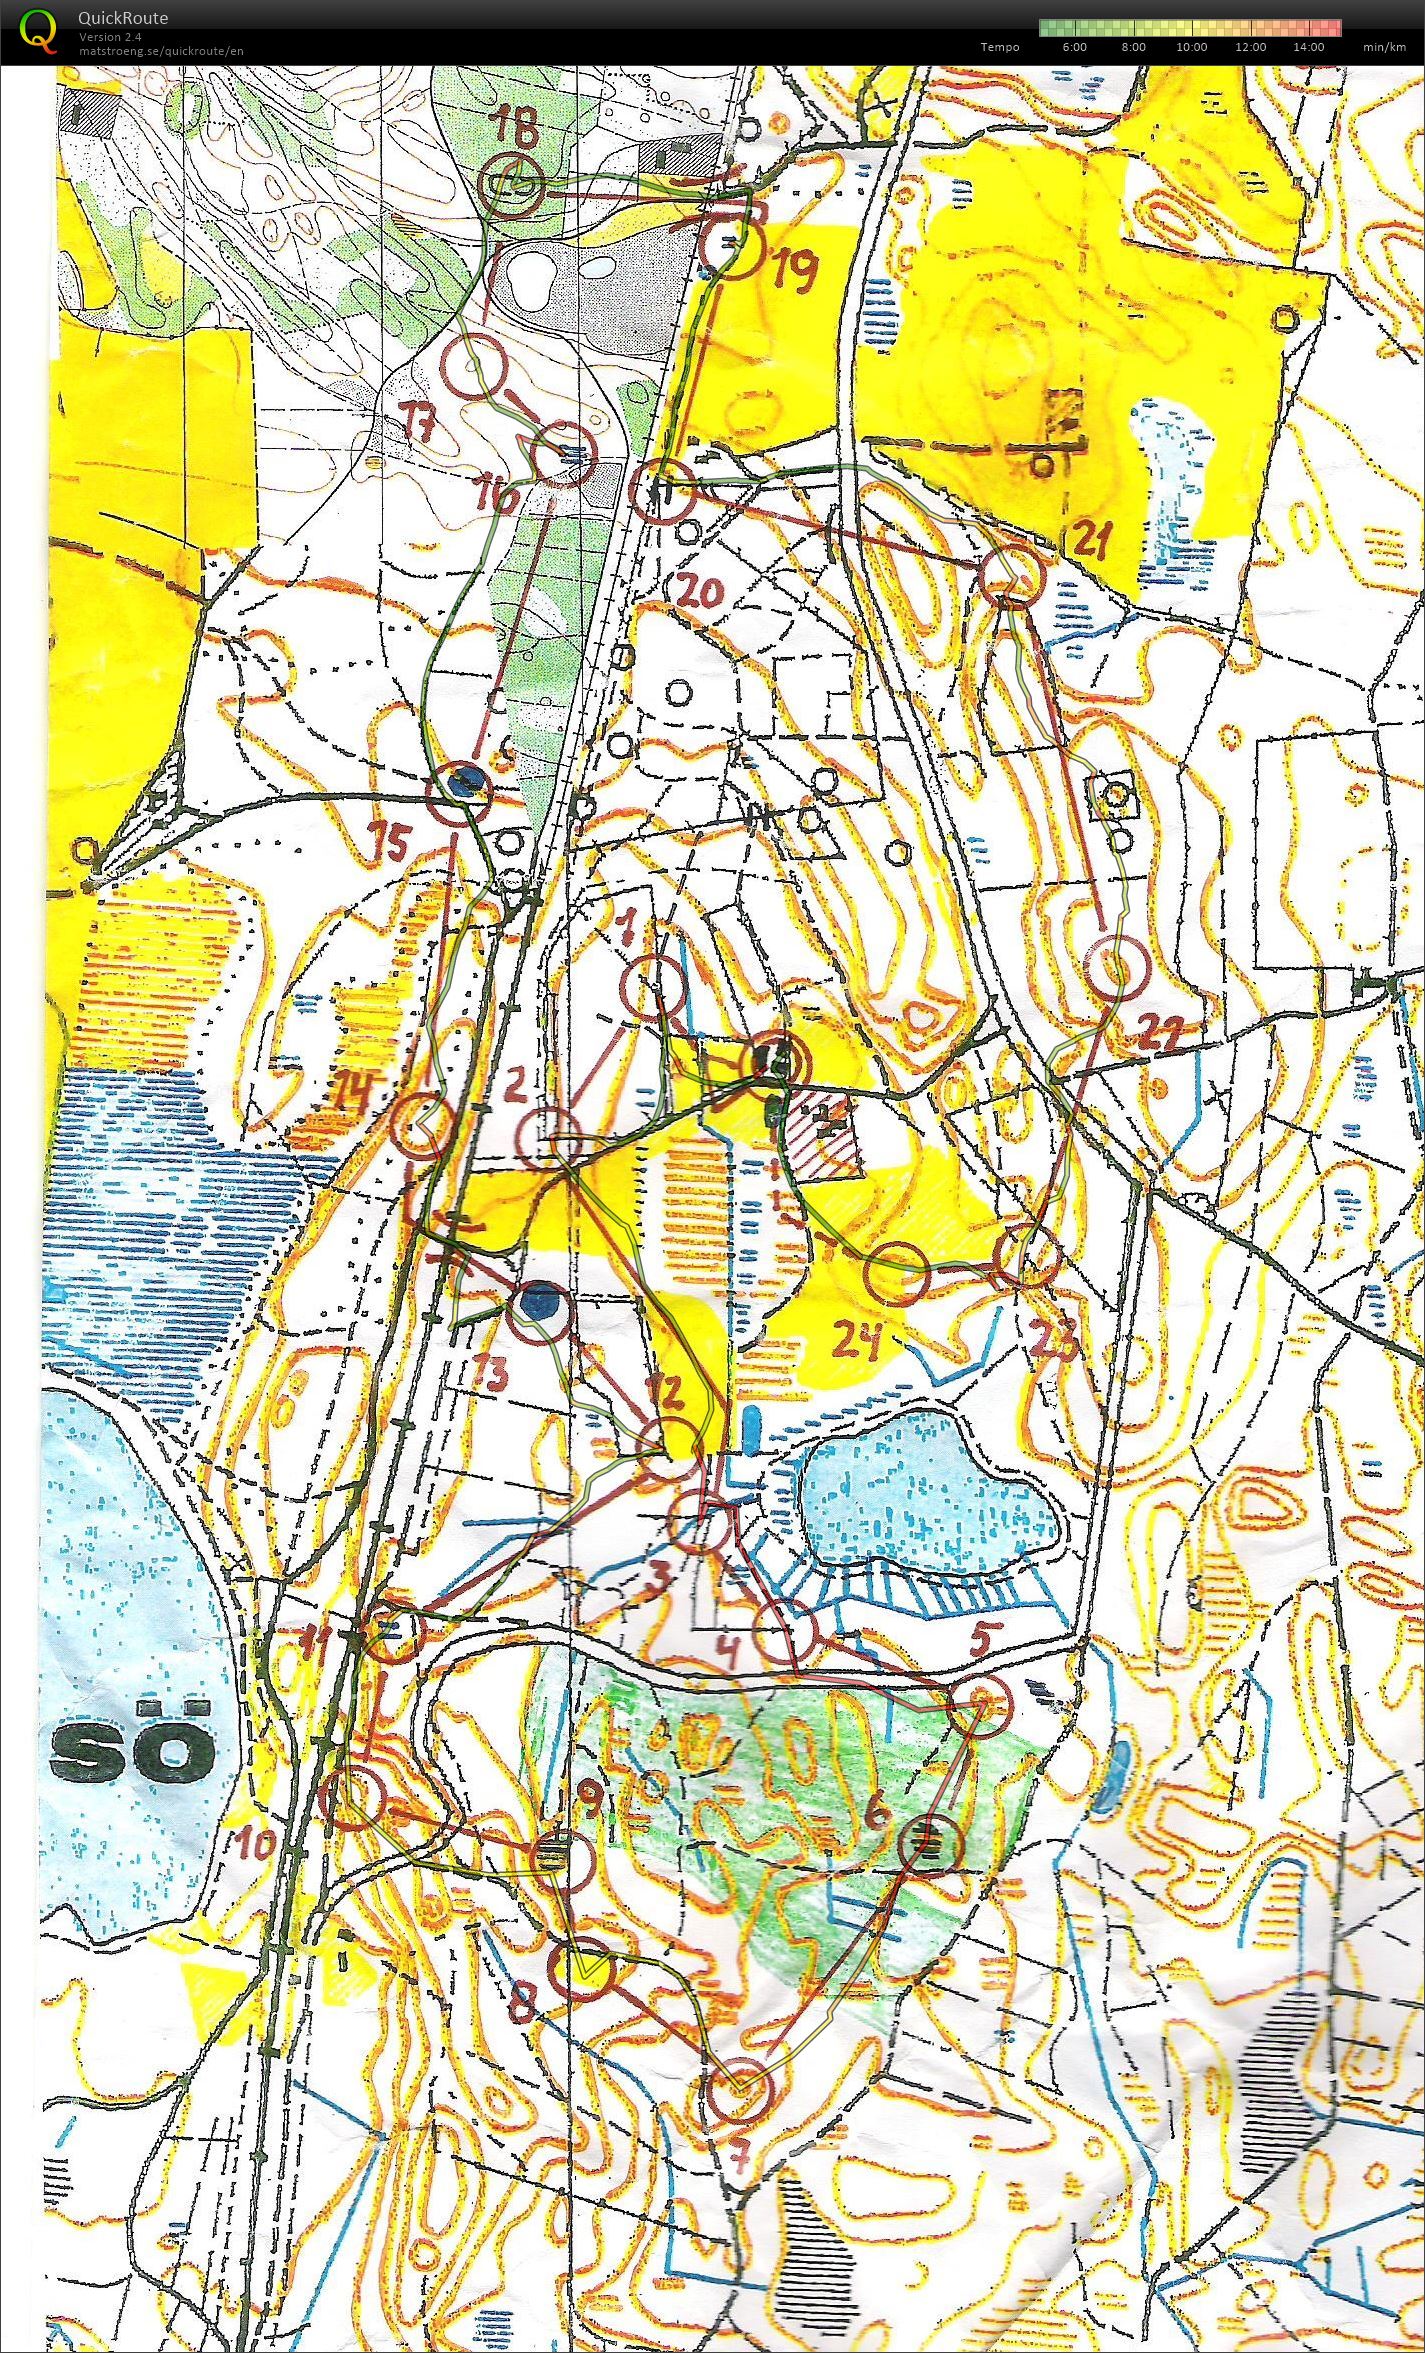 Rold Brændeskov - bane 1 - 6,9 km. (01-01-2014)